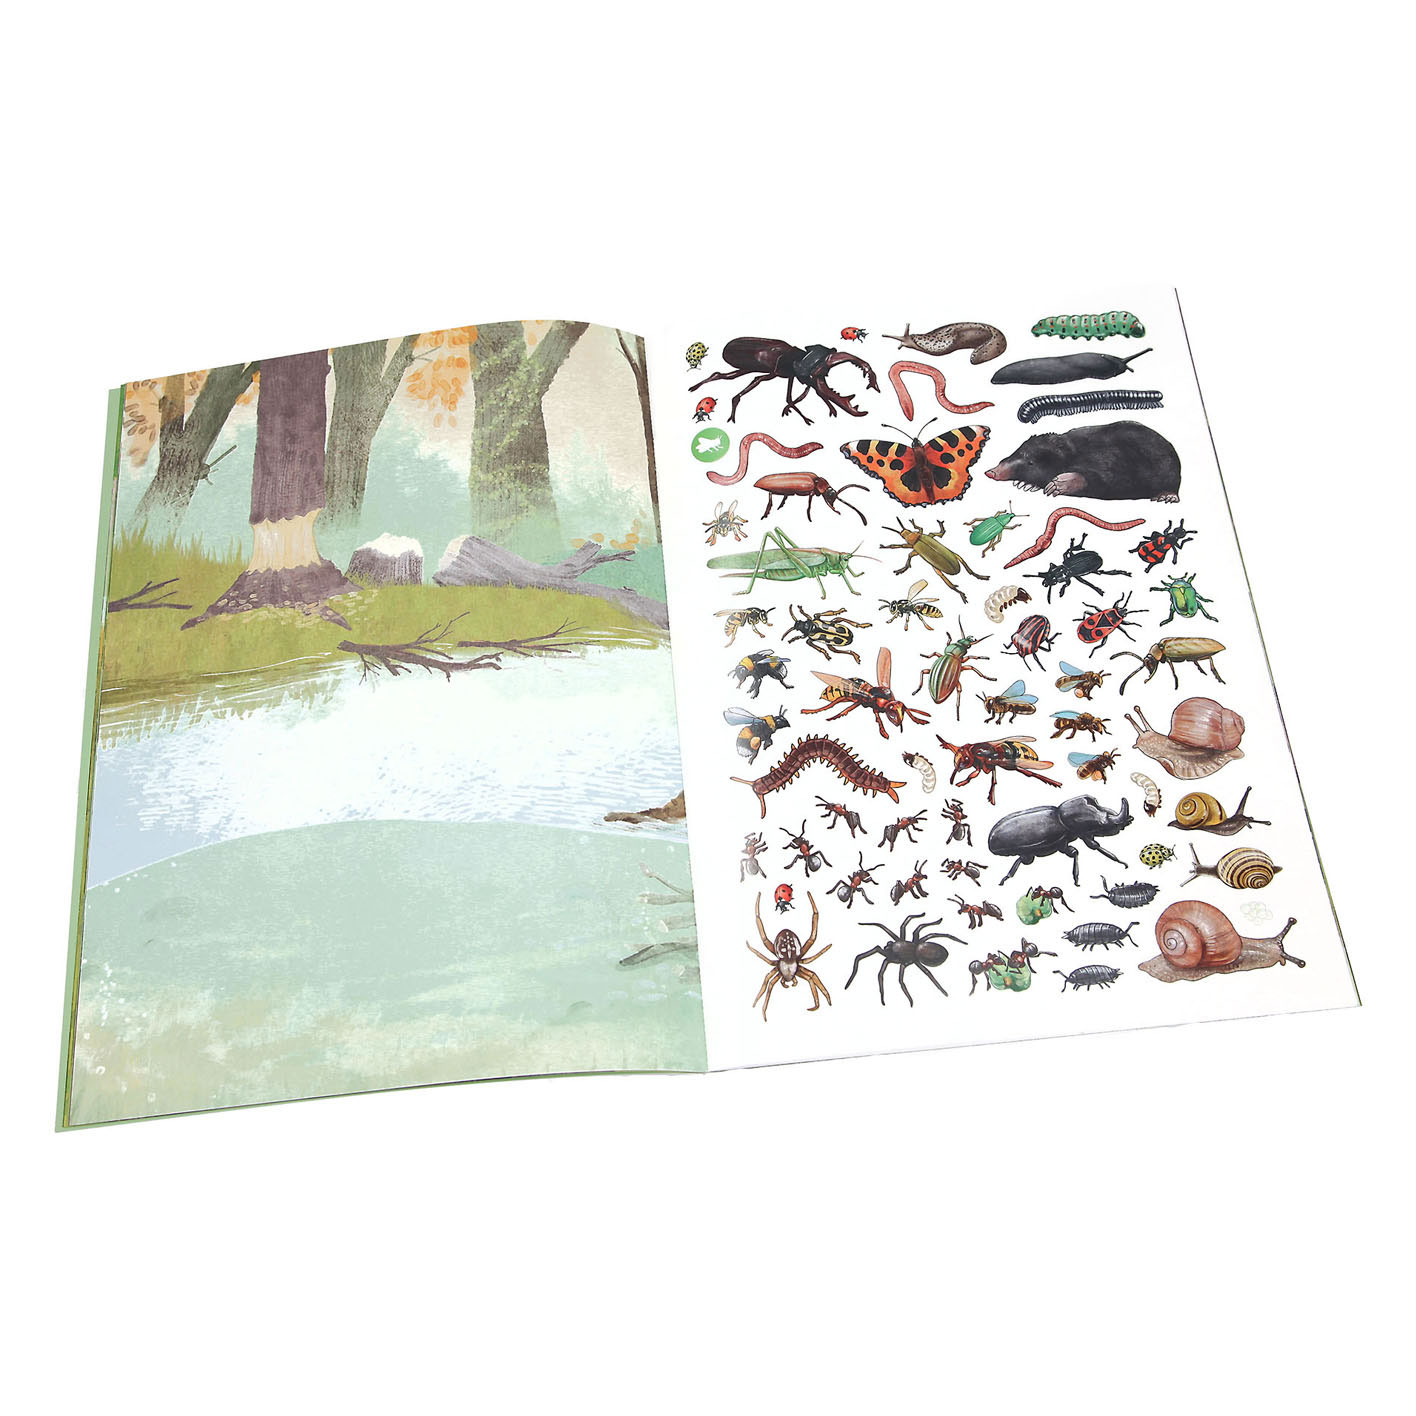 Create your Wild Forest Stickerboek